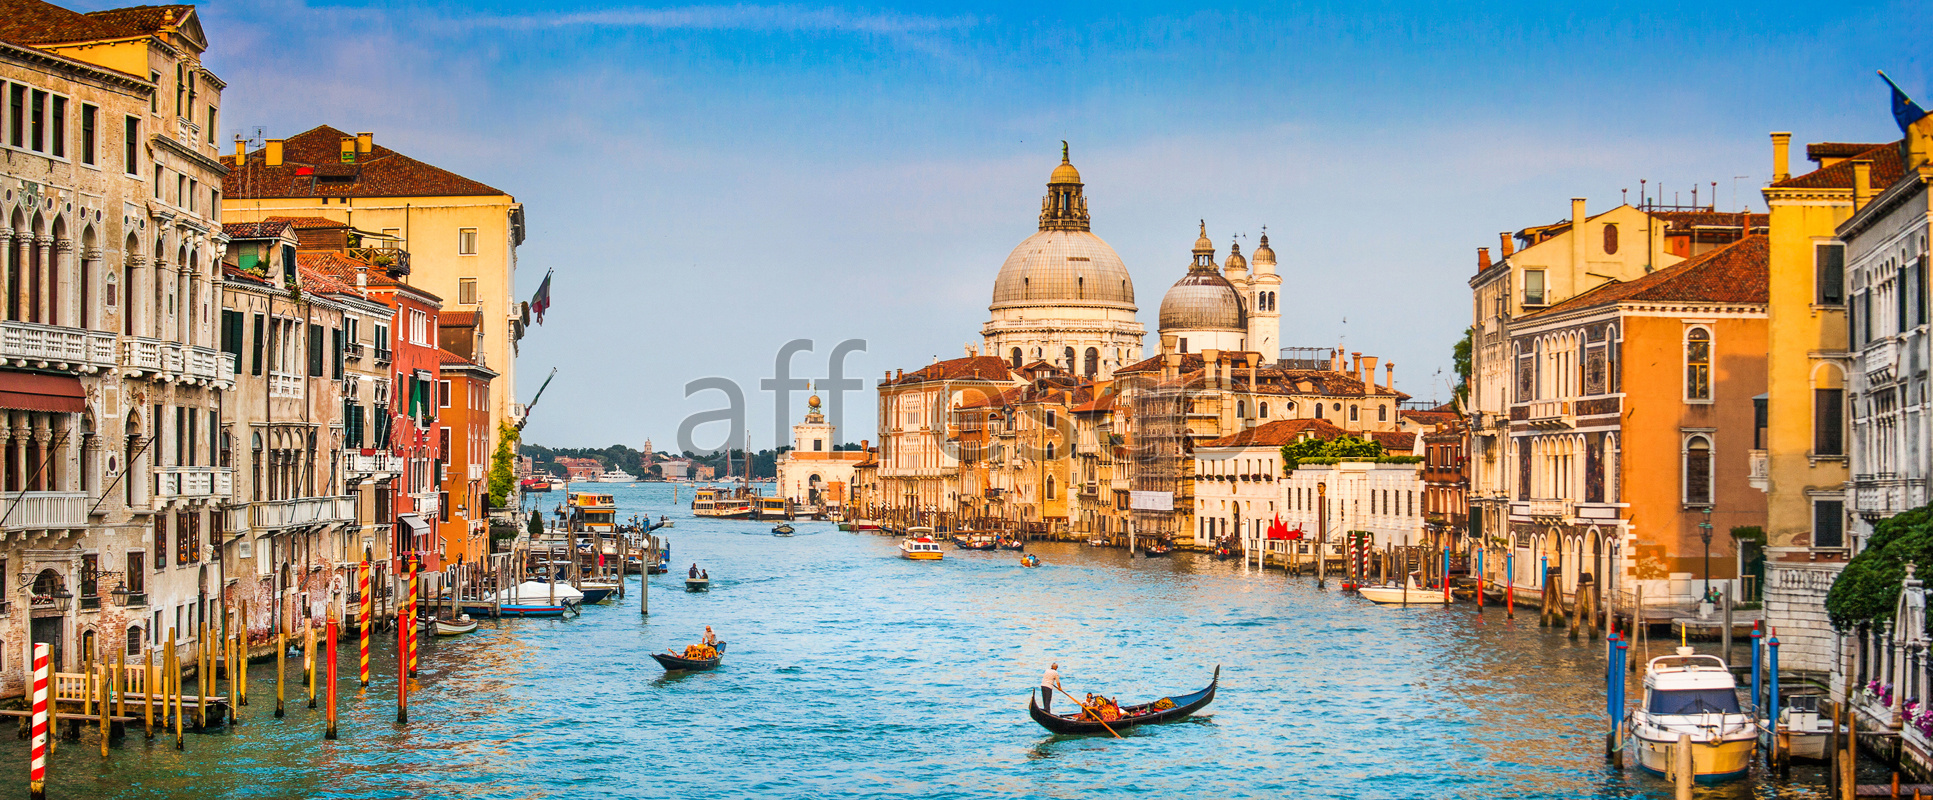 Фрески и фотообои, Венецианская панорама